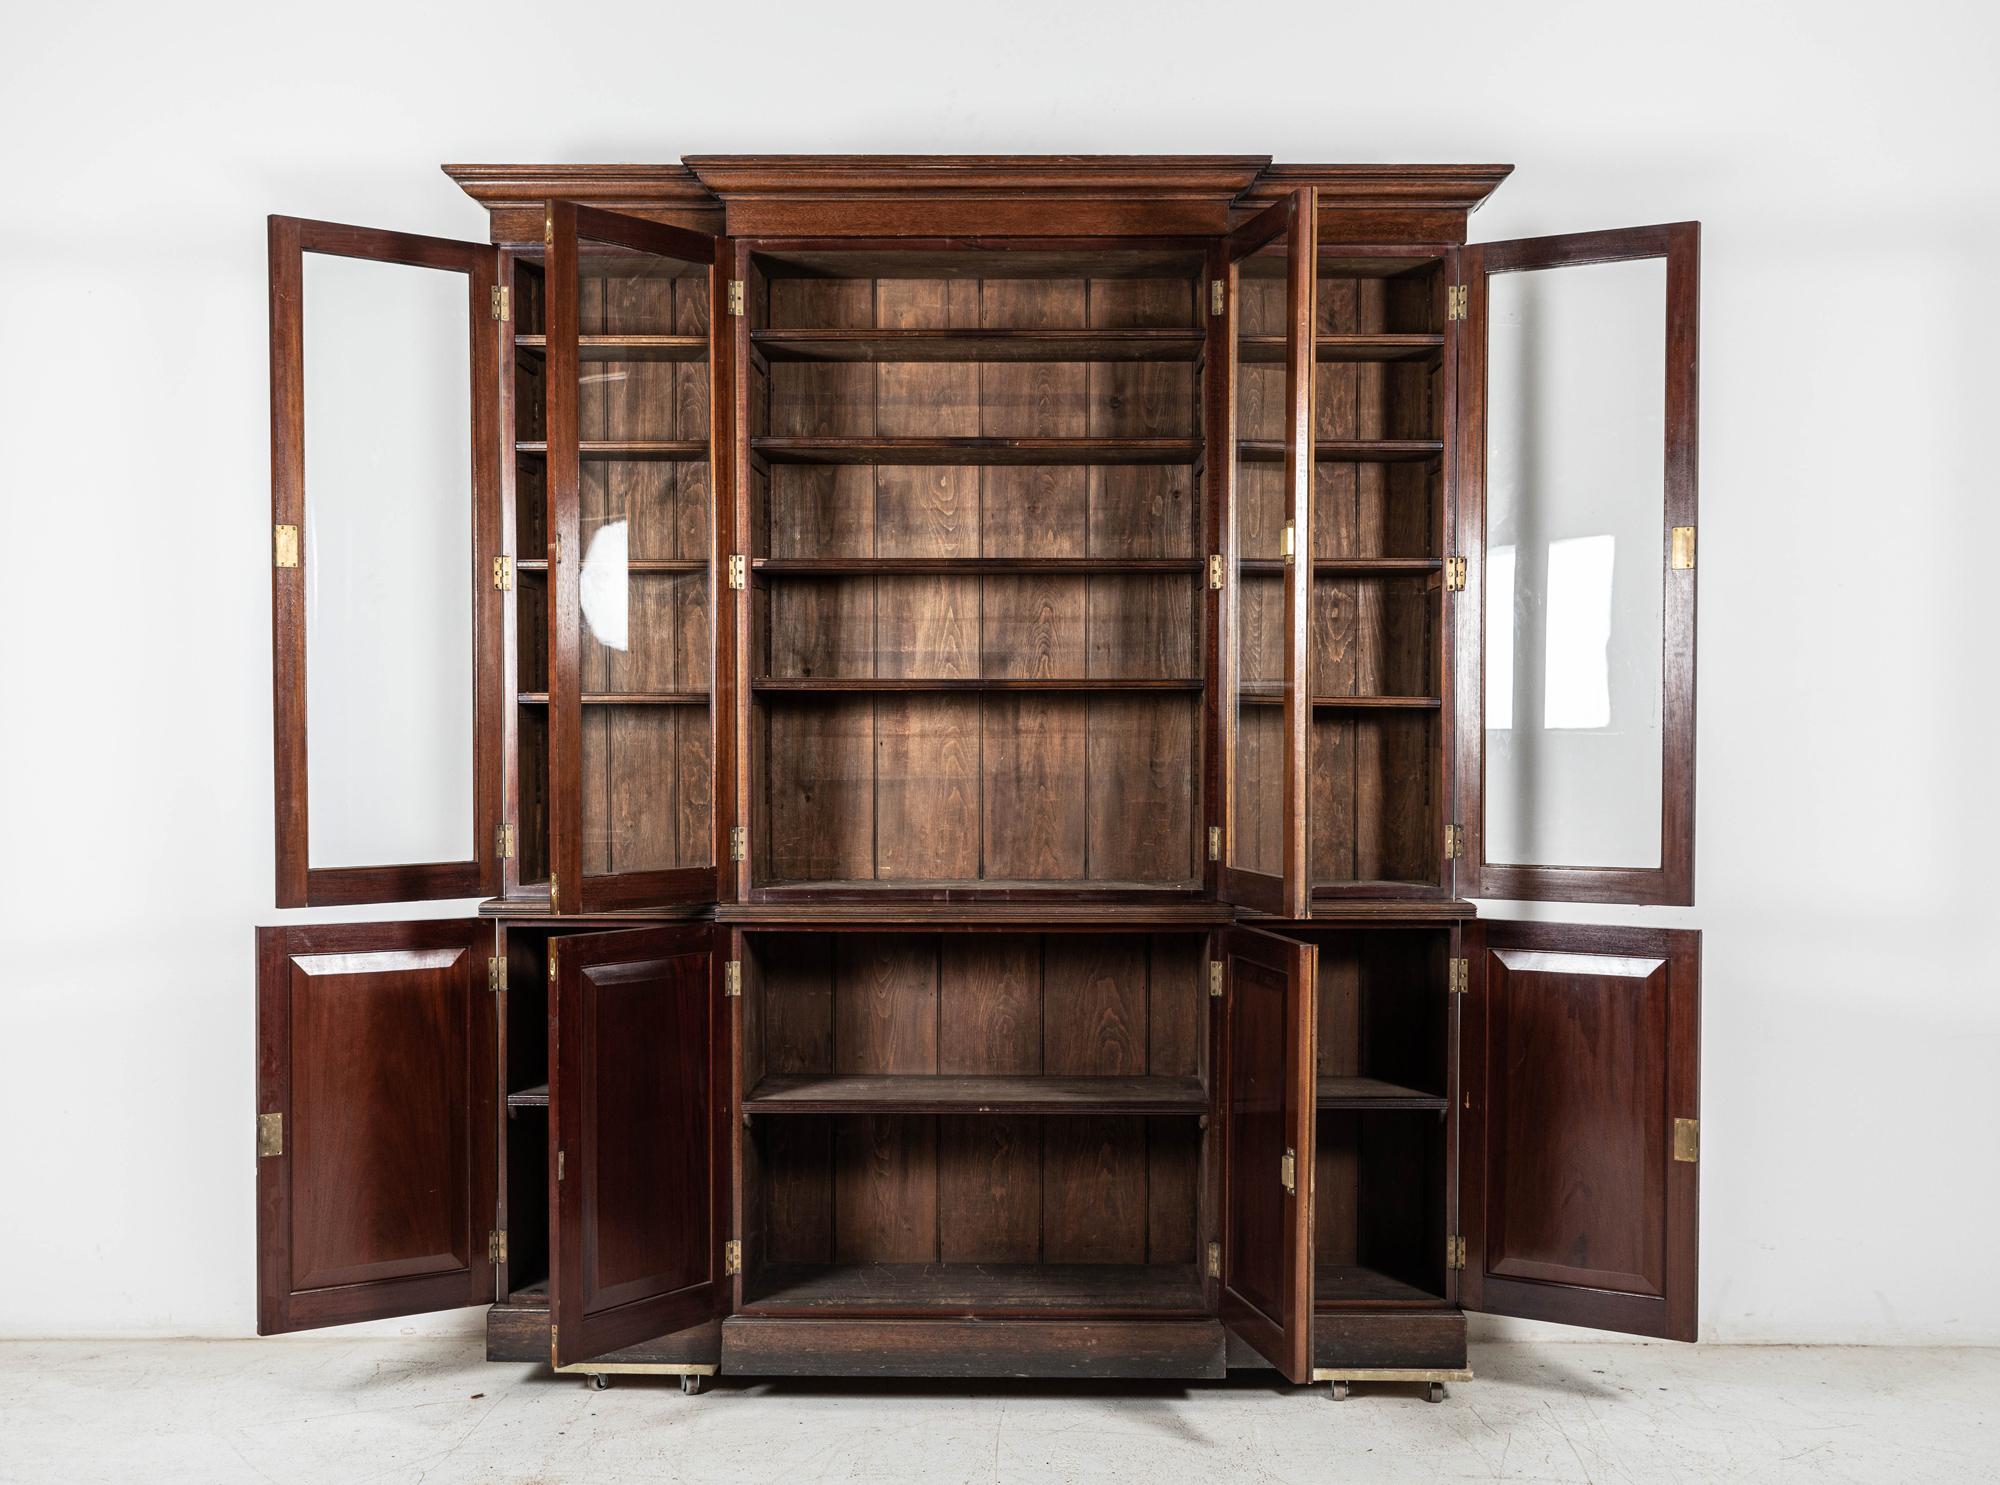 Um 1890

glasiertes Mahagoni-Bücherregal aus dem 19. Jahrhundert

Vorstehendes Gesims über vier verglasten Schranktüren mit verstellbaren Einlegeböden, über einem Sockel mit vier Paneeltüren, erhöht auf einem Sockel

sku 897B

H226 x B200 x T44